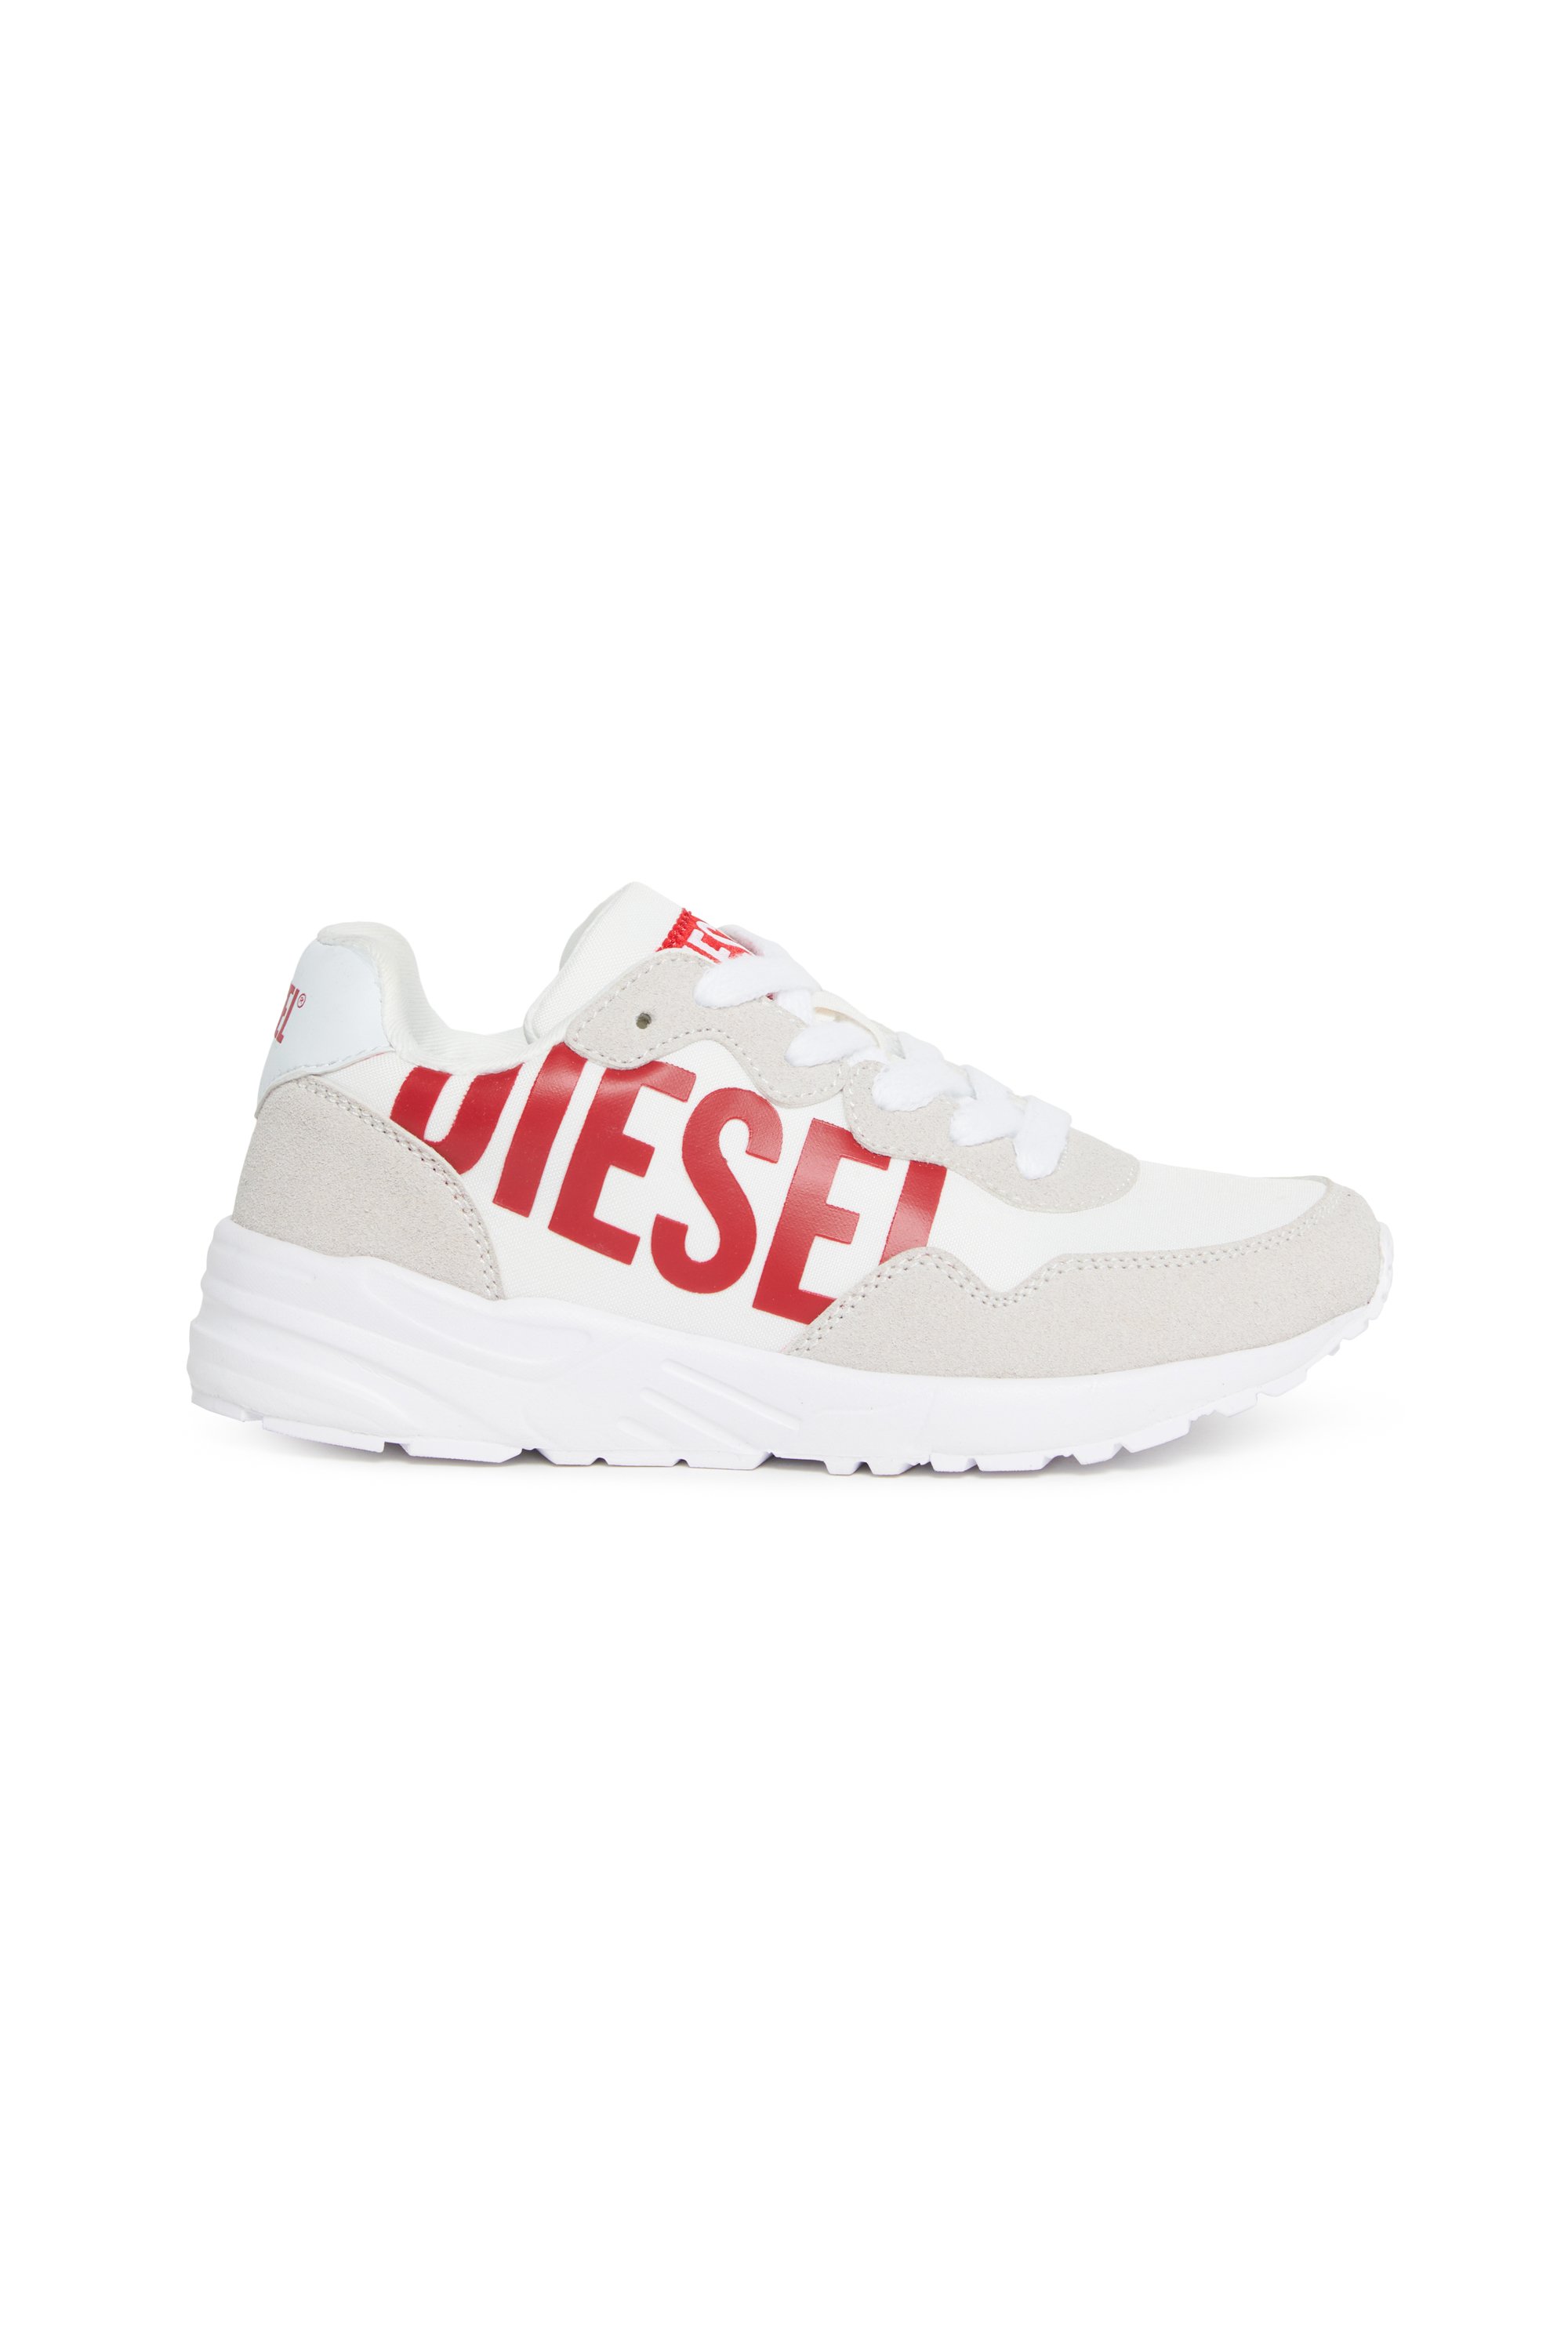 Diesel - Nylon sneakers with shiny Diesel print - Footwear - Unisex - Multicolor